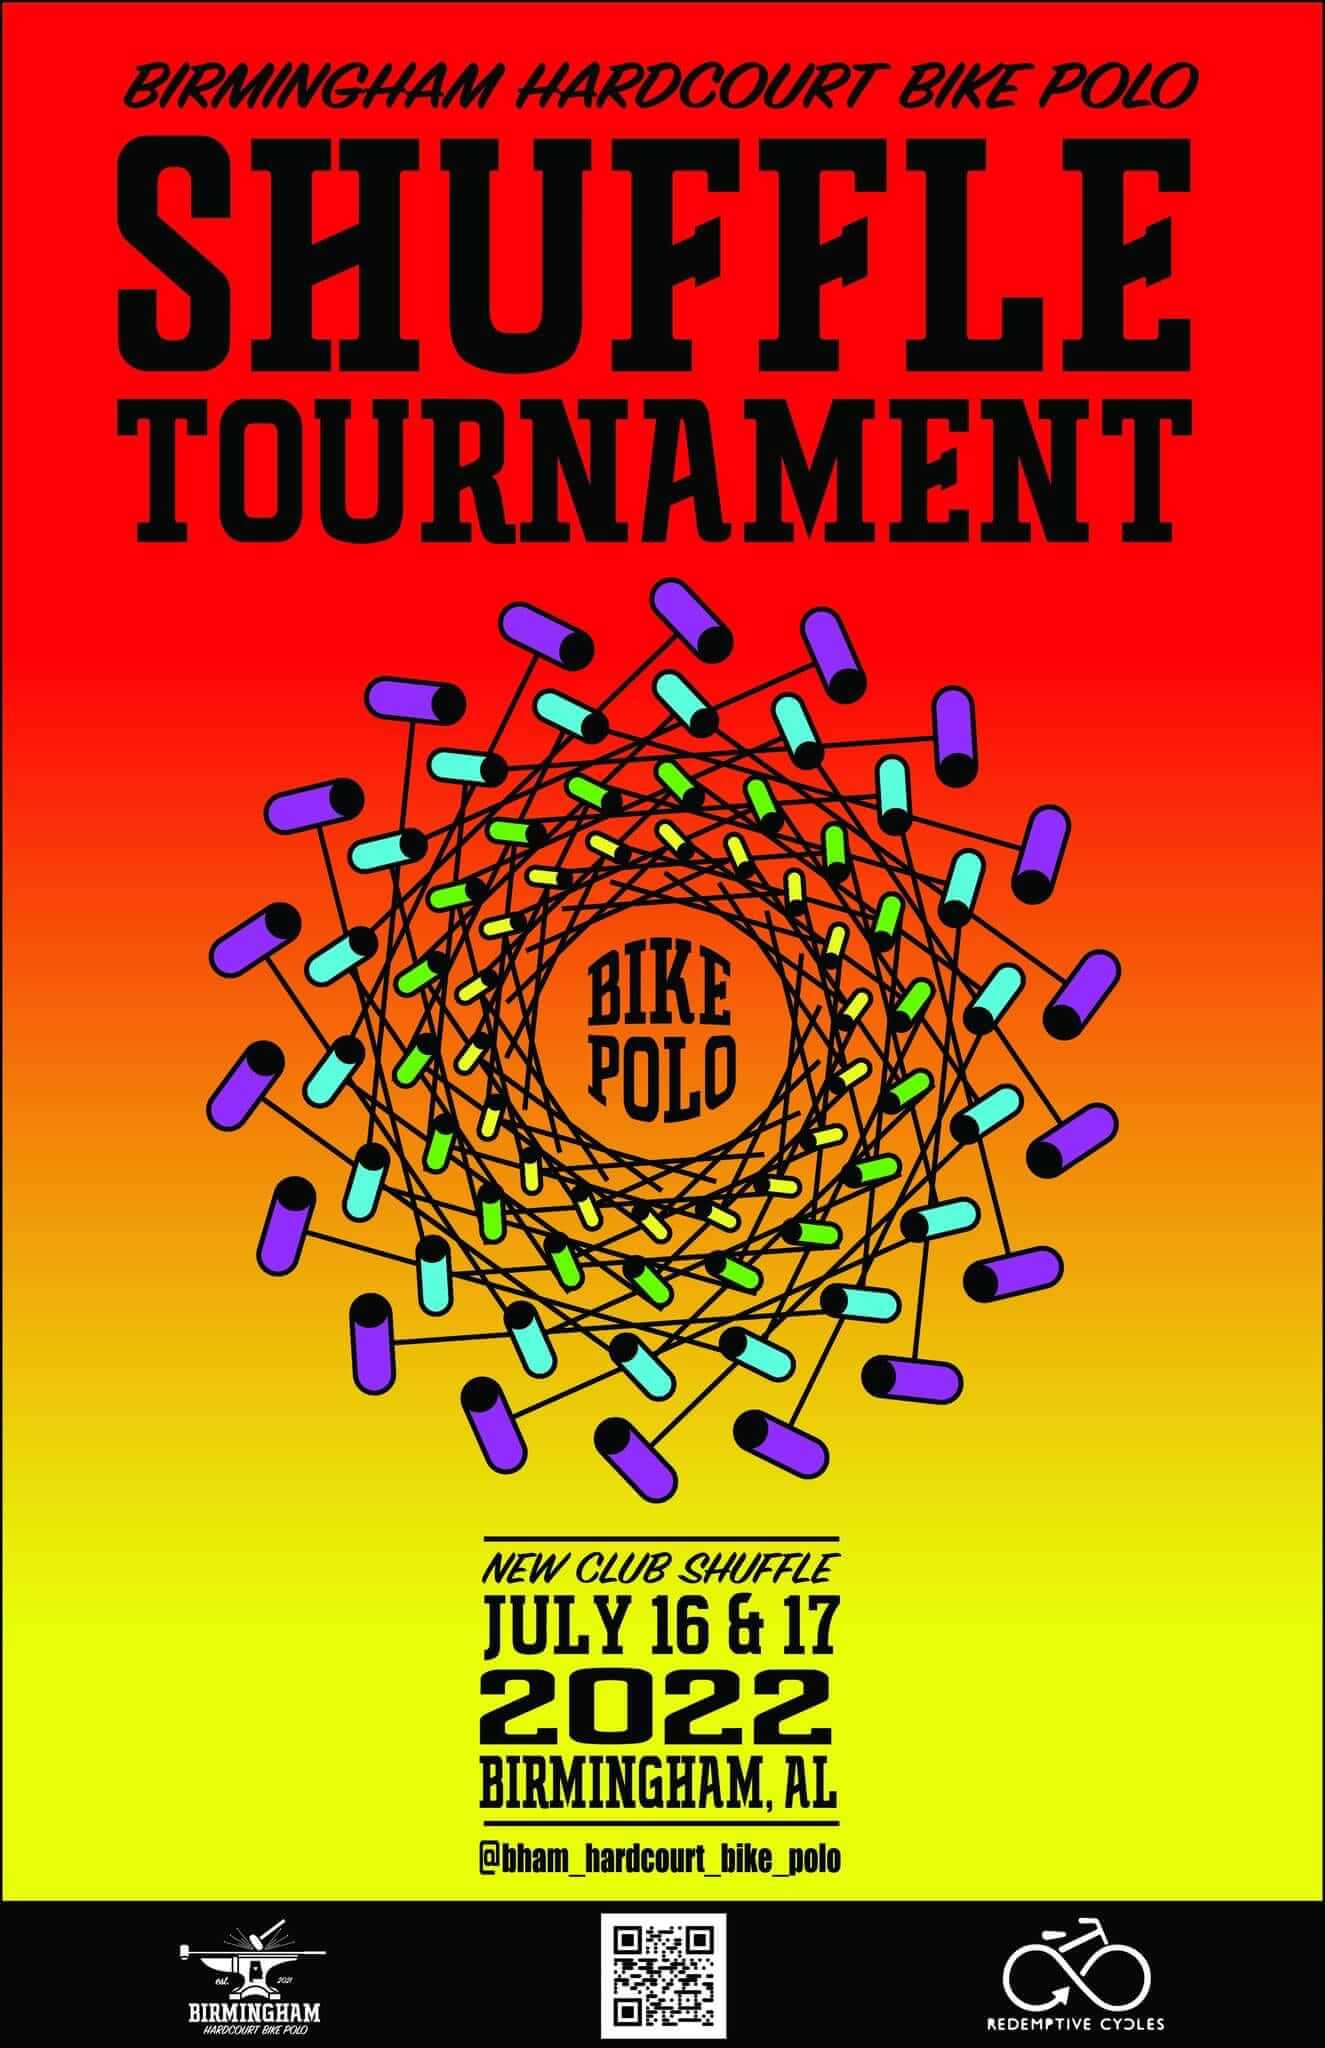 Birmingham bike polo shuffle tournament, new club shuffle, July 15-16, 2021